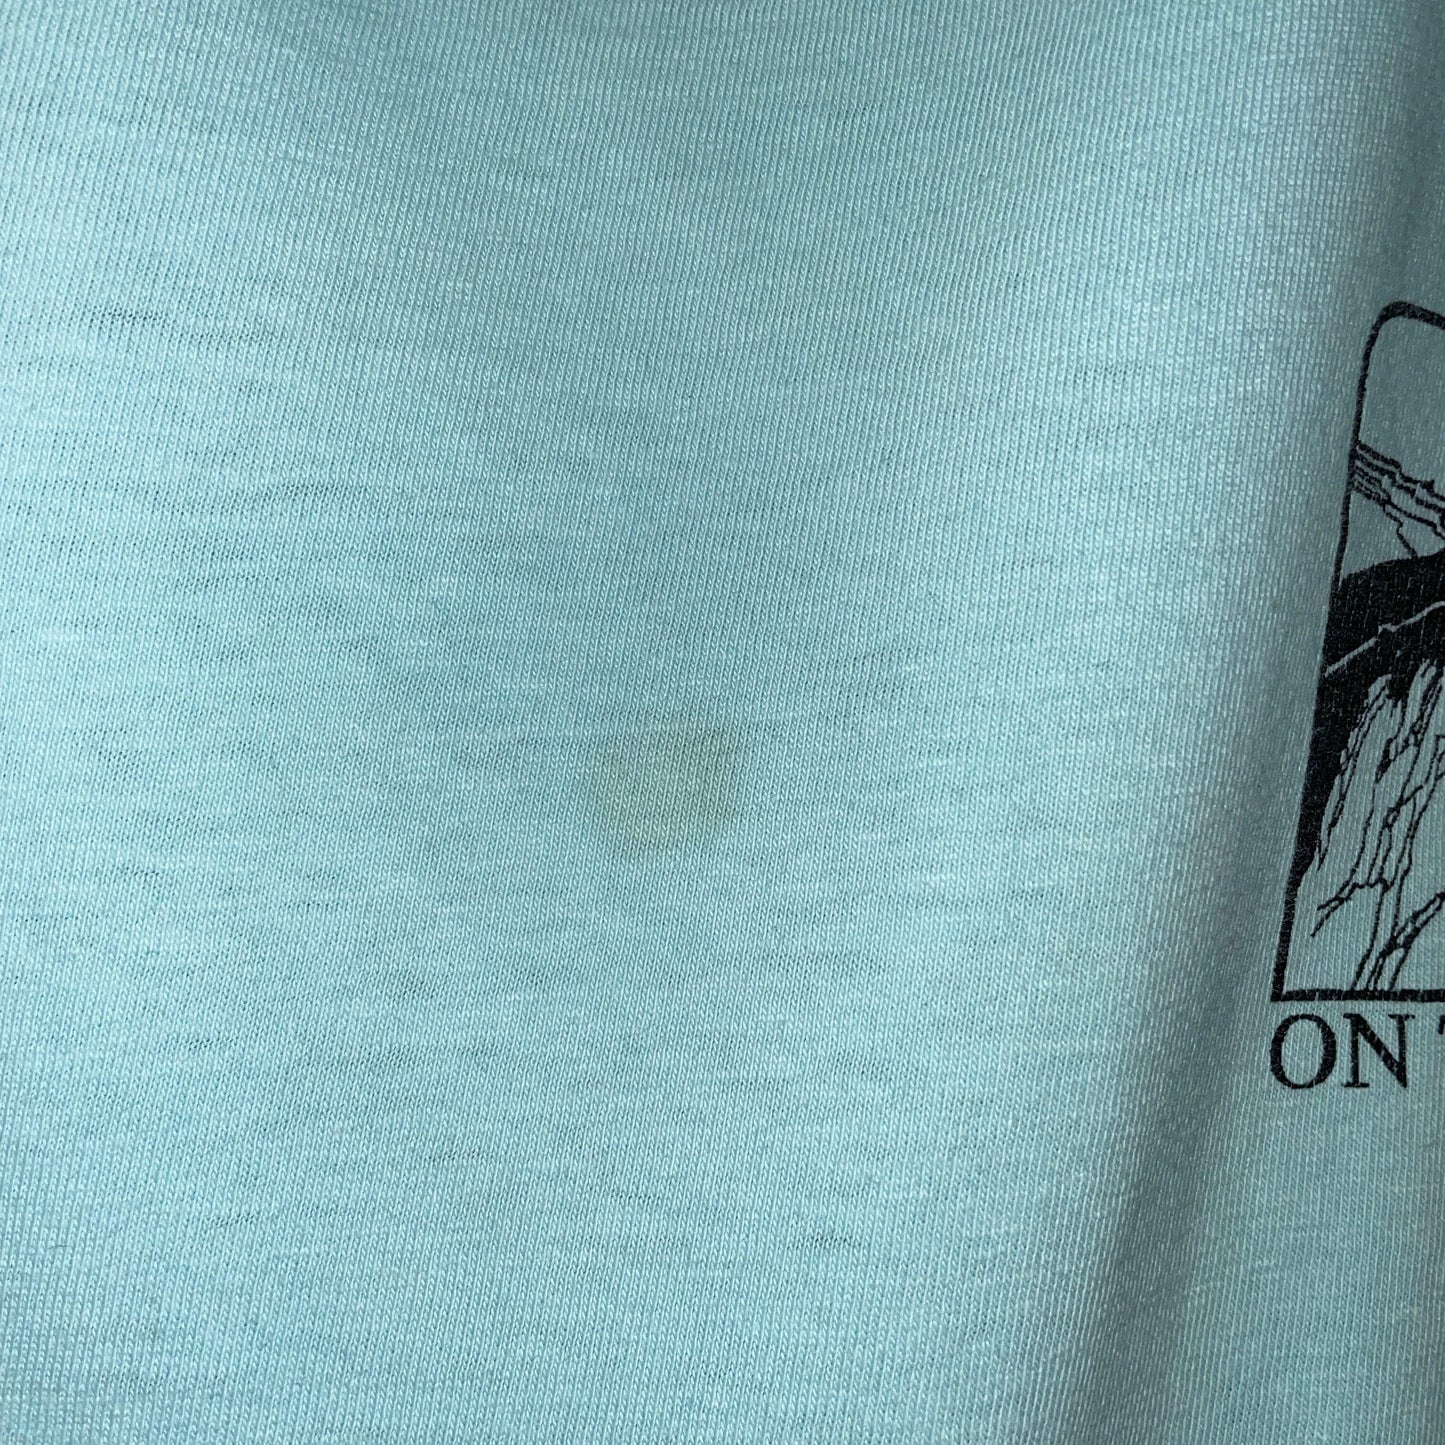 ONEITA Onita T-shirt Tee single stitch USA